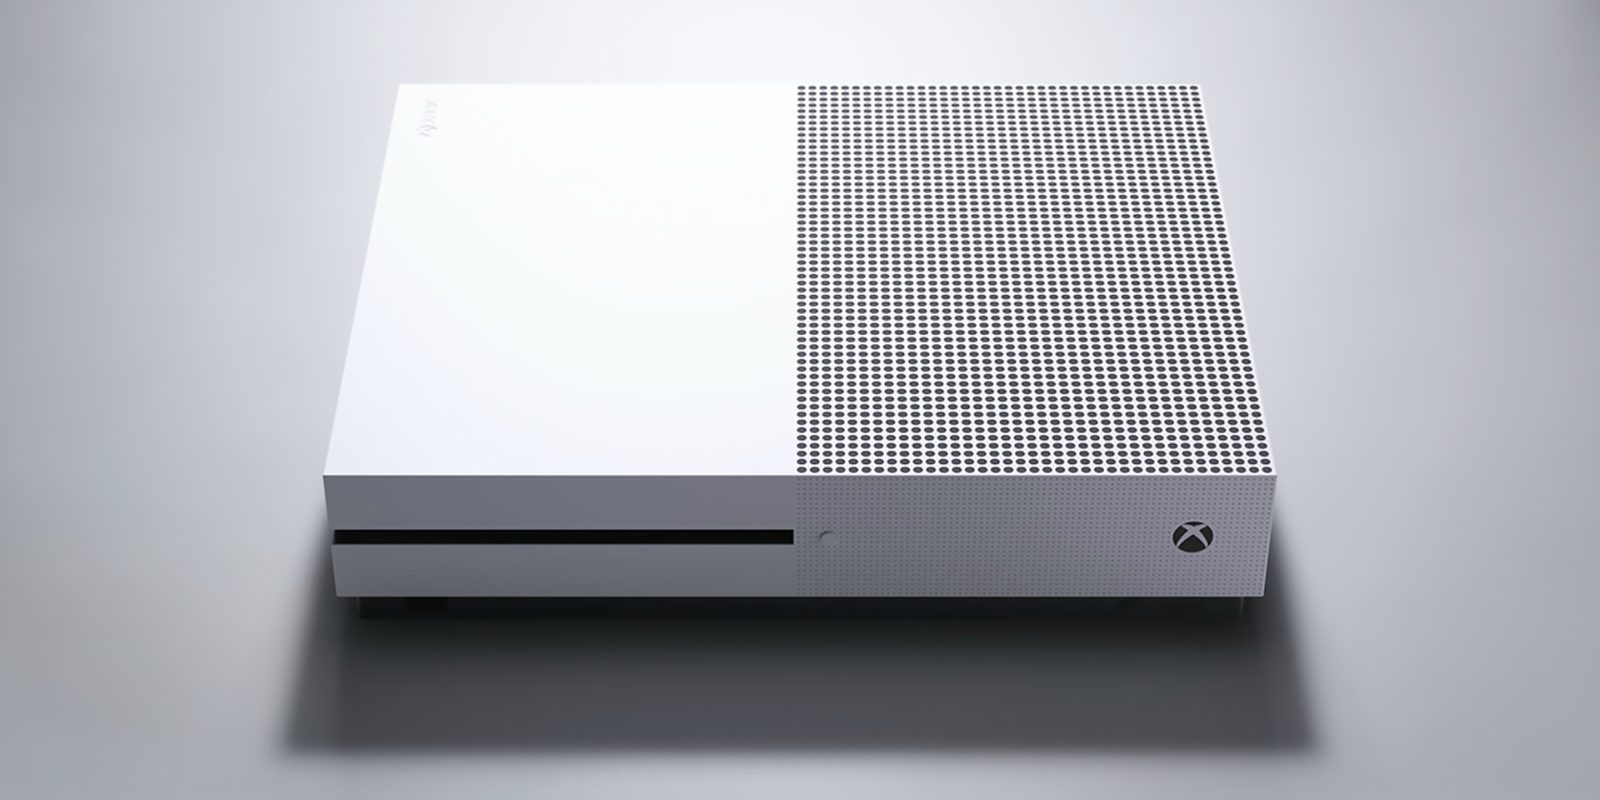 Todos los usuarios de Xbox One pueden regalar ahora juegos digitales